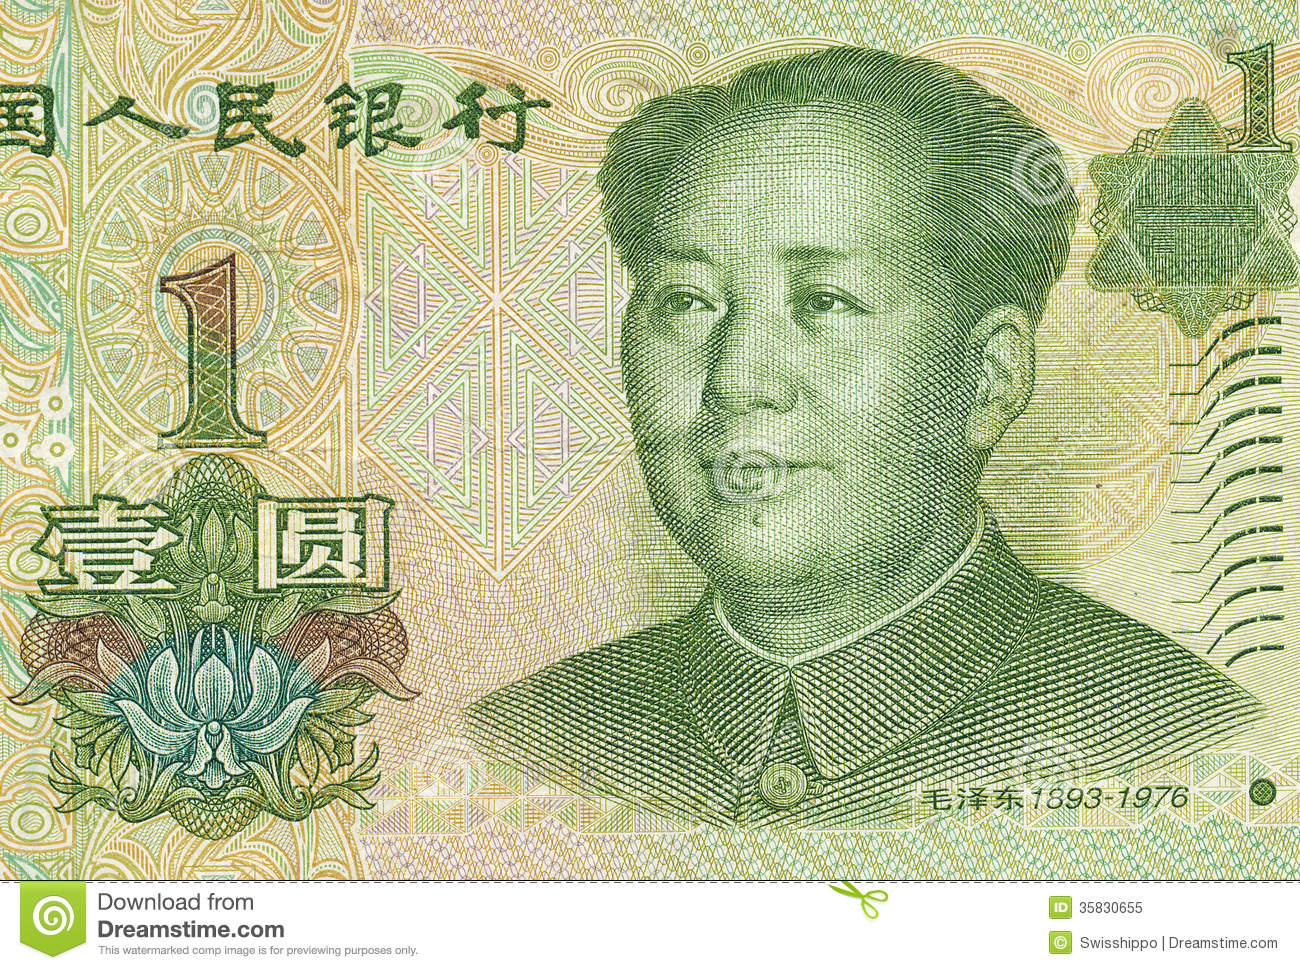 Chinese yuanChinese yuan